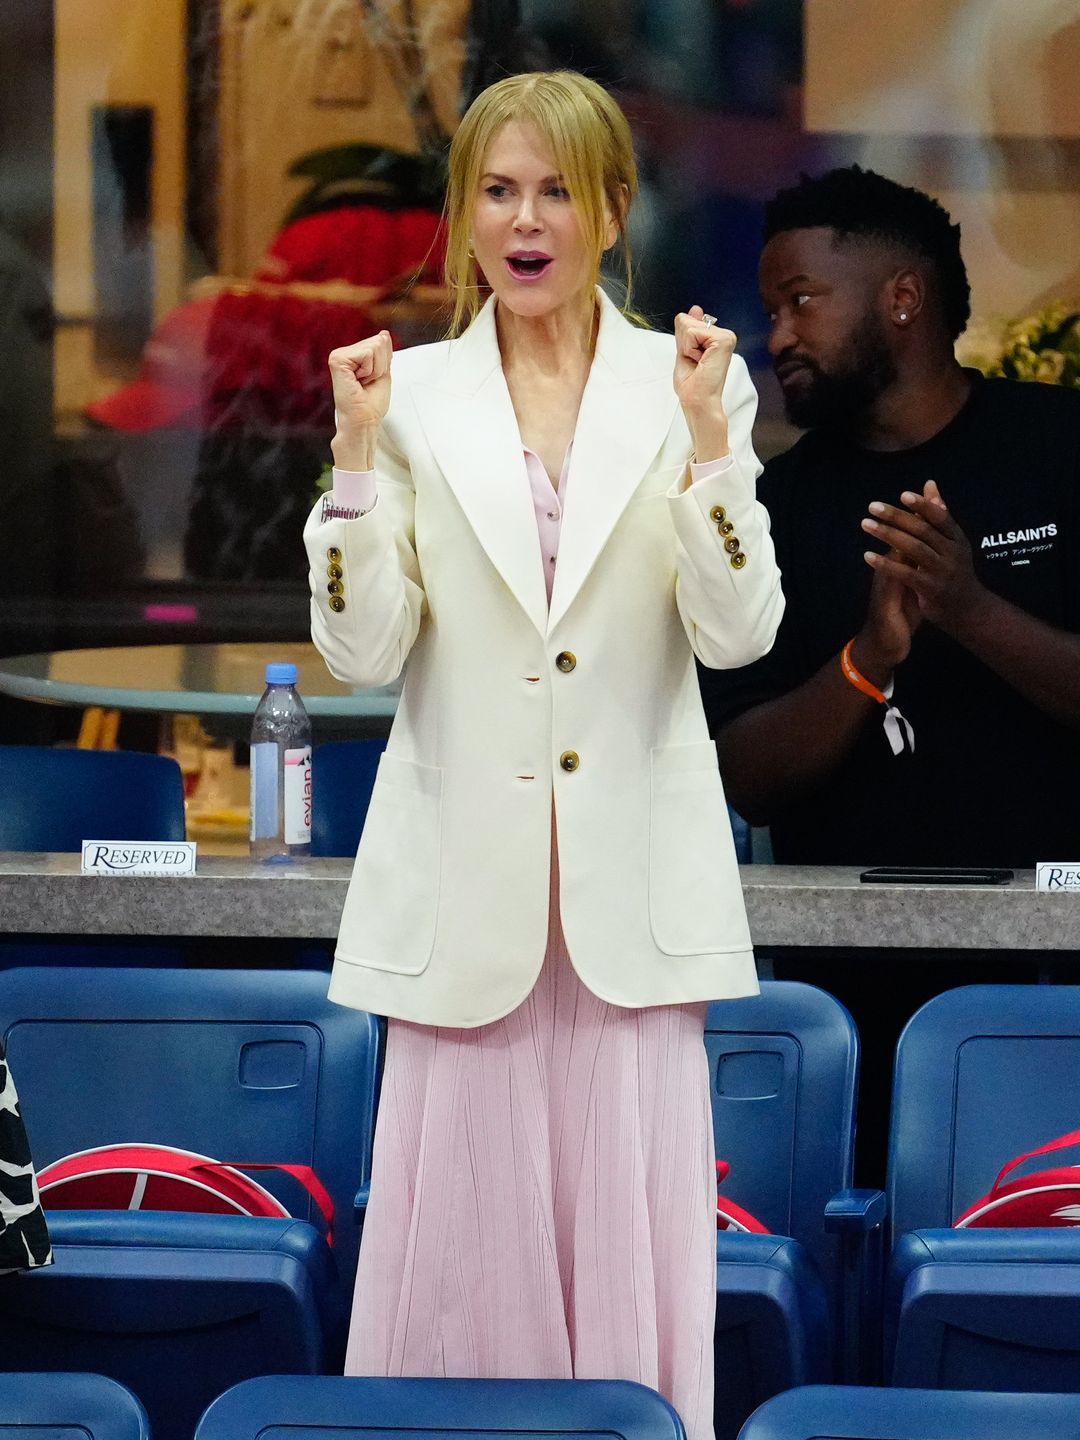 Nicole Kidman at the US Open 